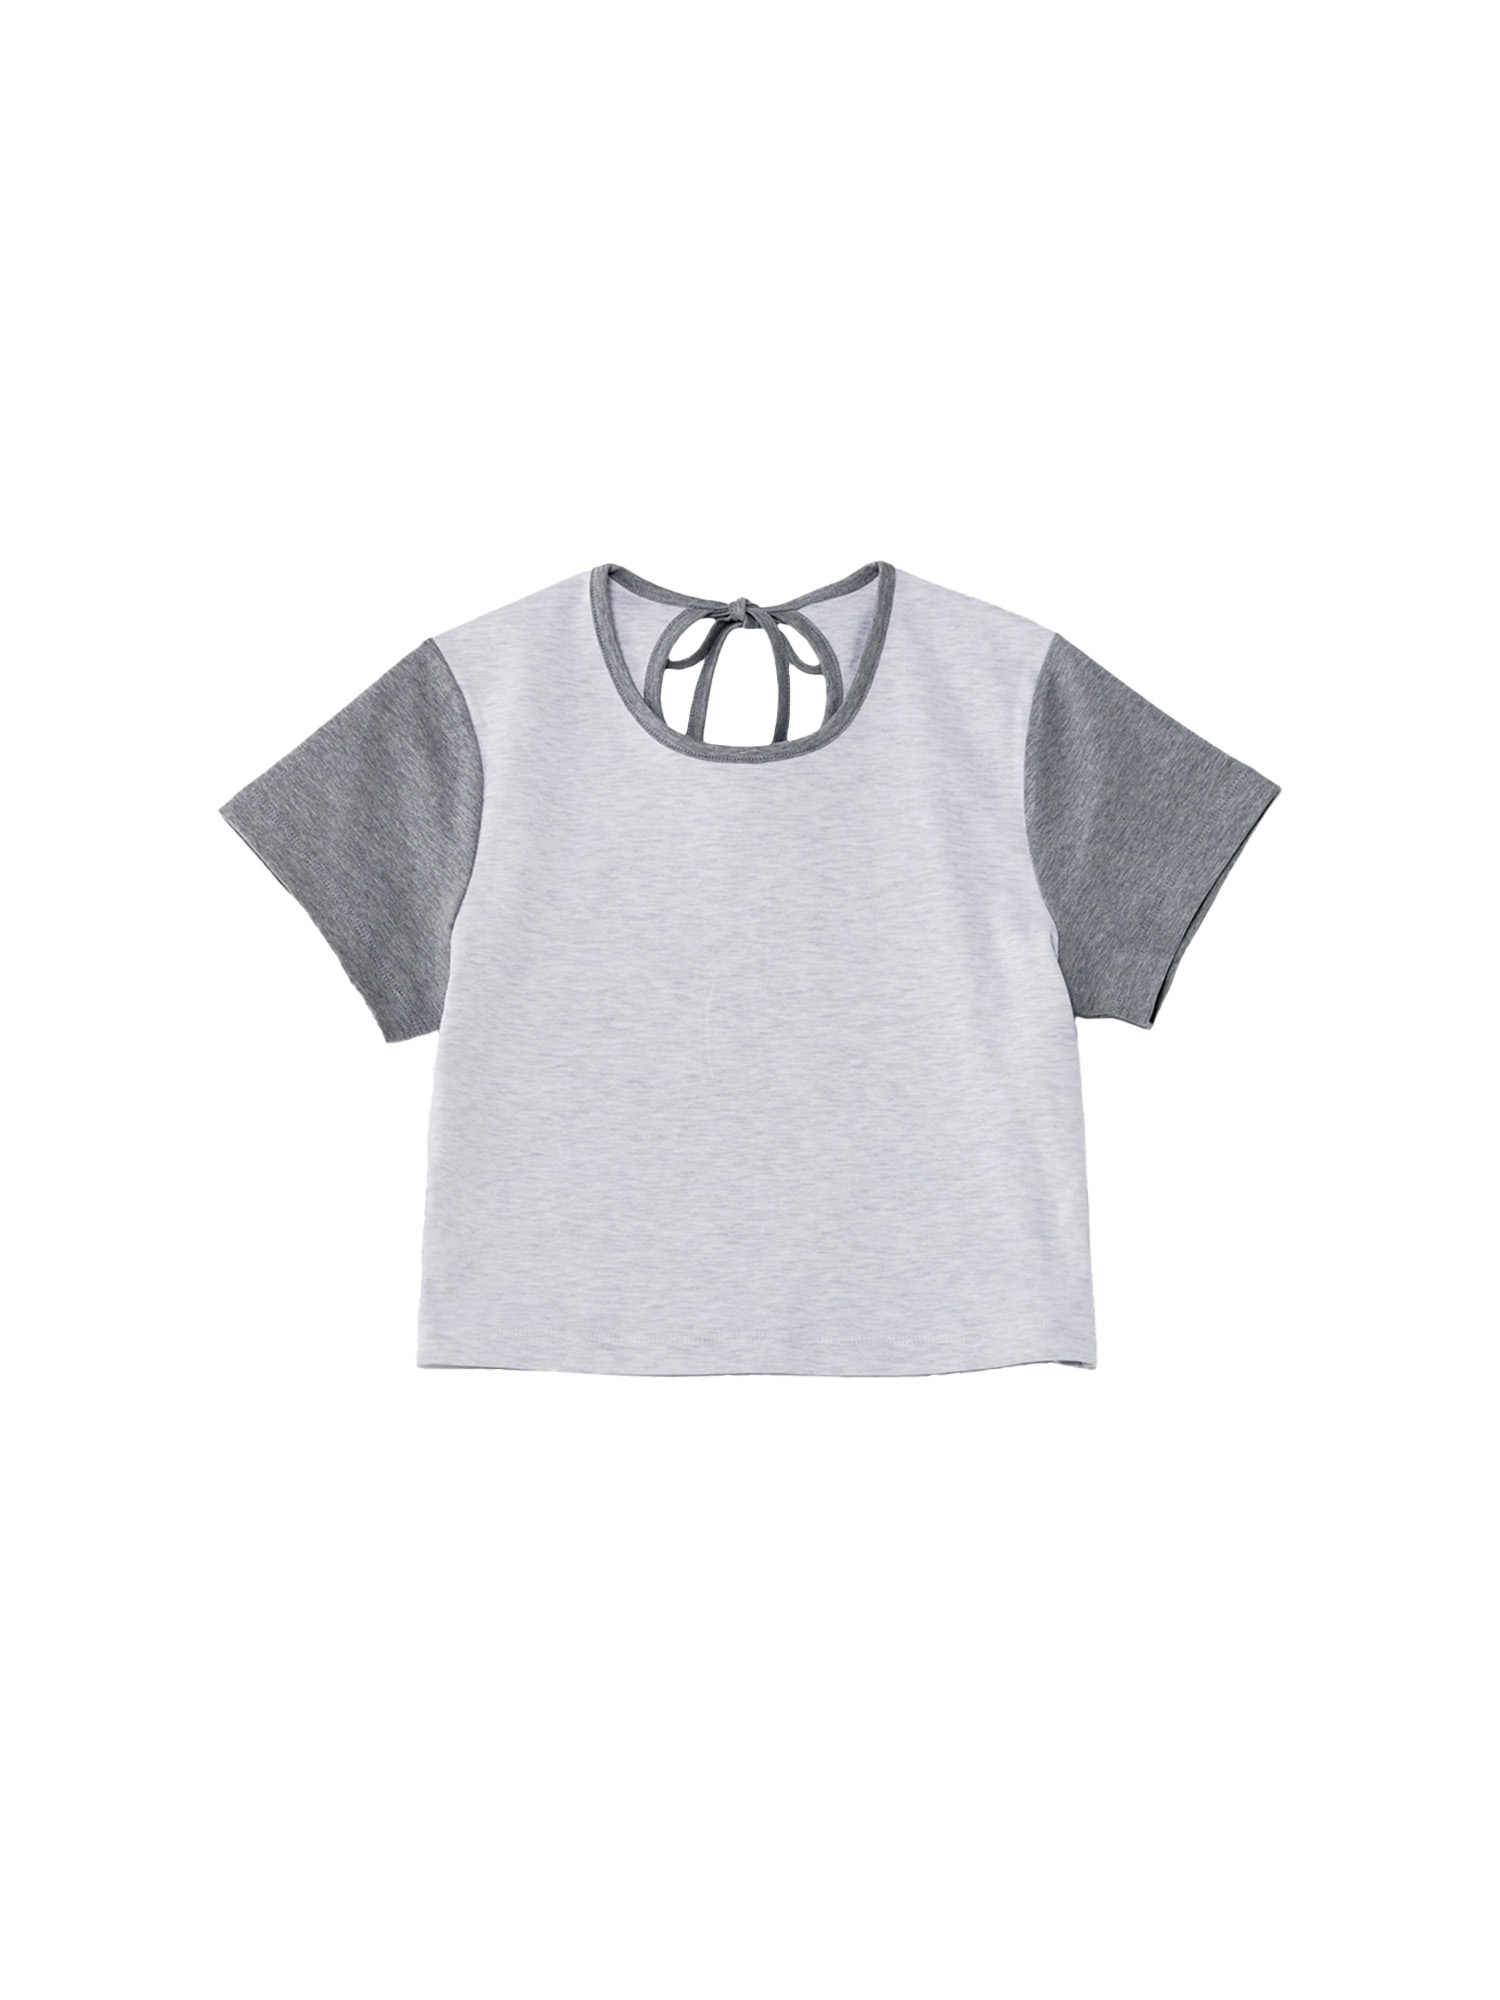 Eclipse T-Shirt (2colors) - Melange